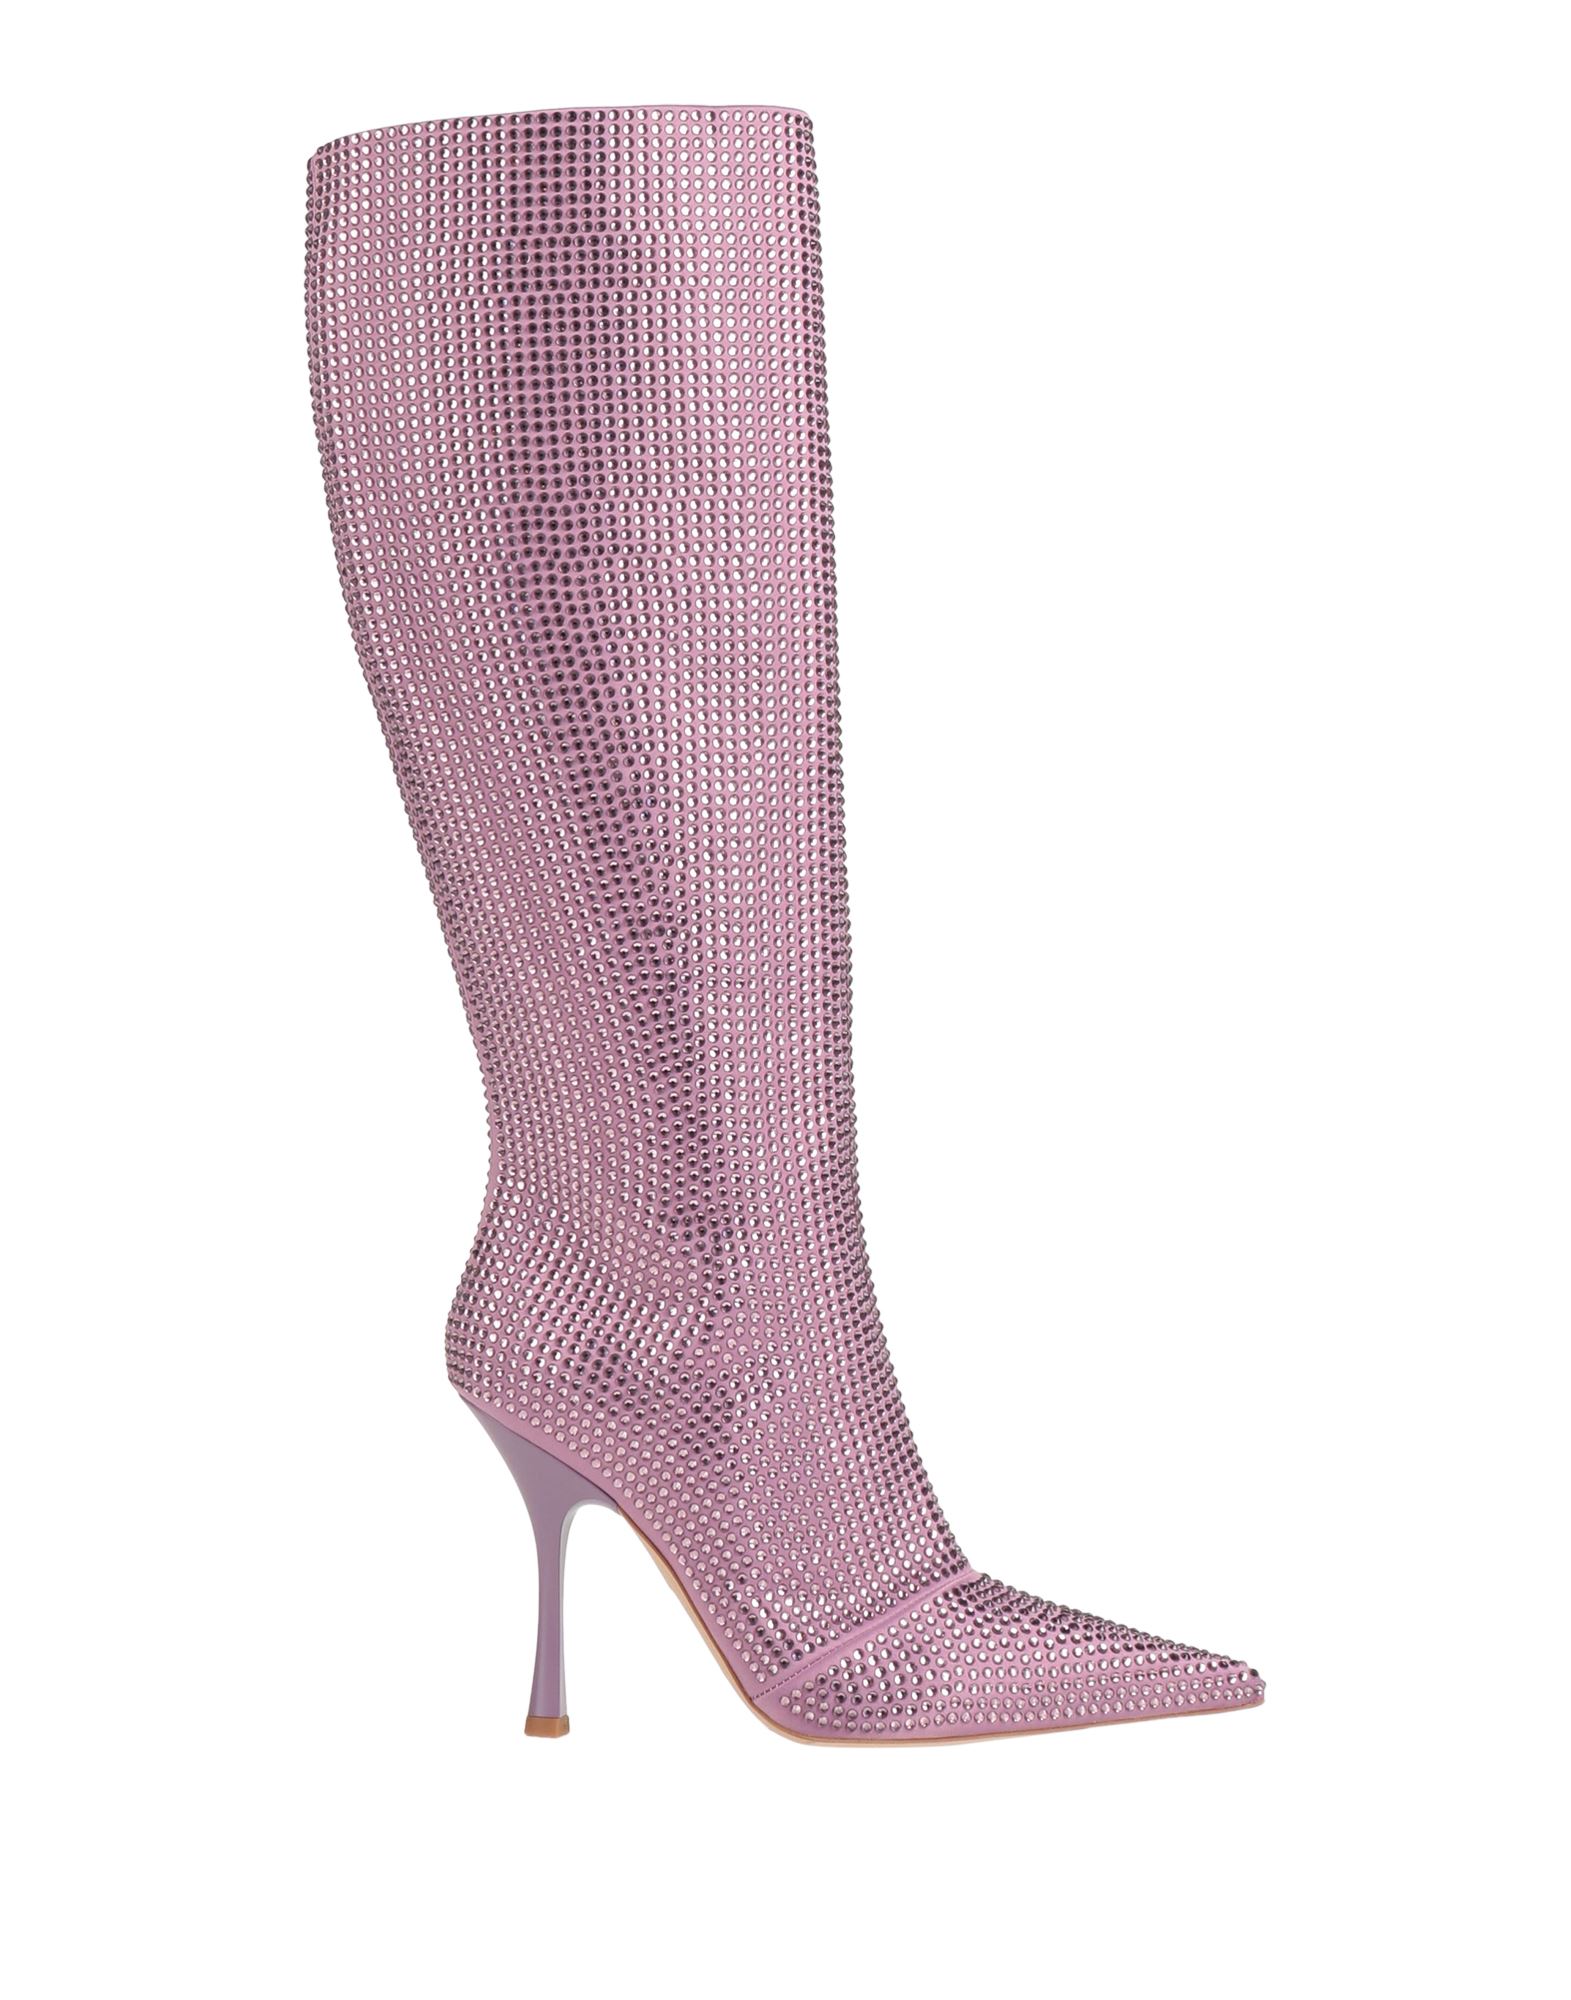 Shop Liu •jo Woman Boot Pastel Pink Size 8 Textile Fibers